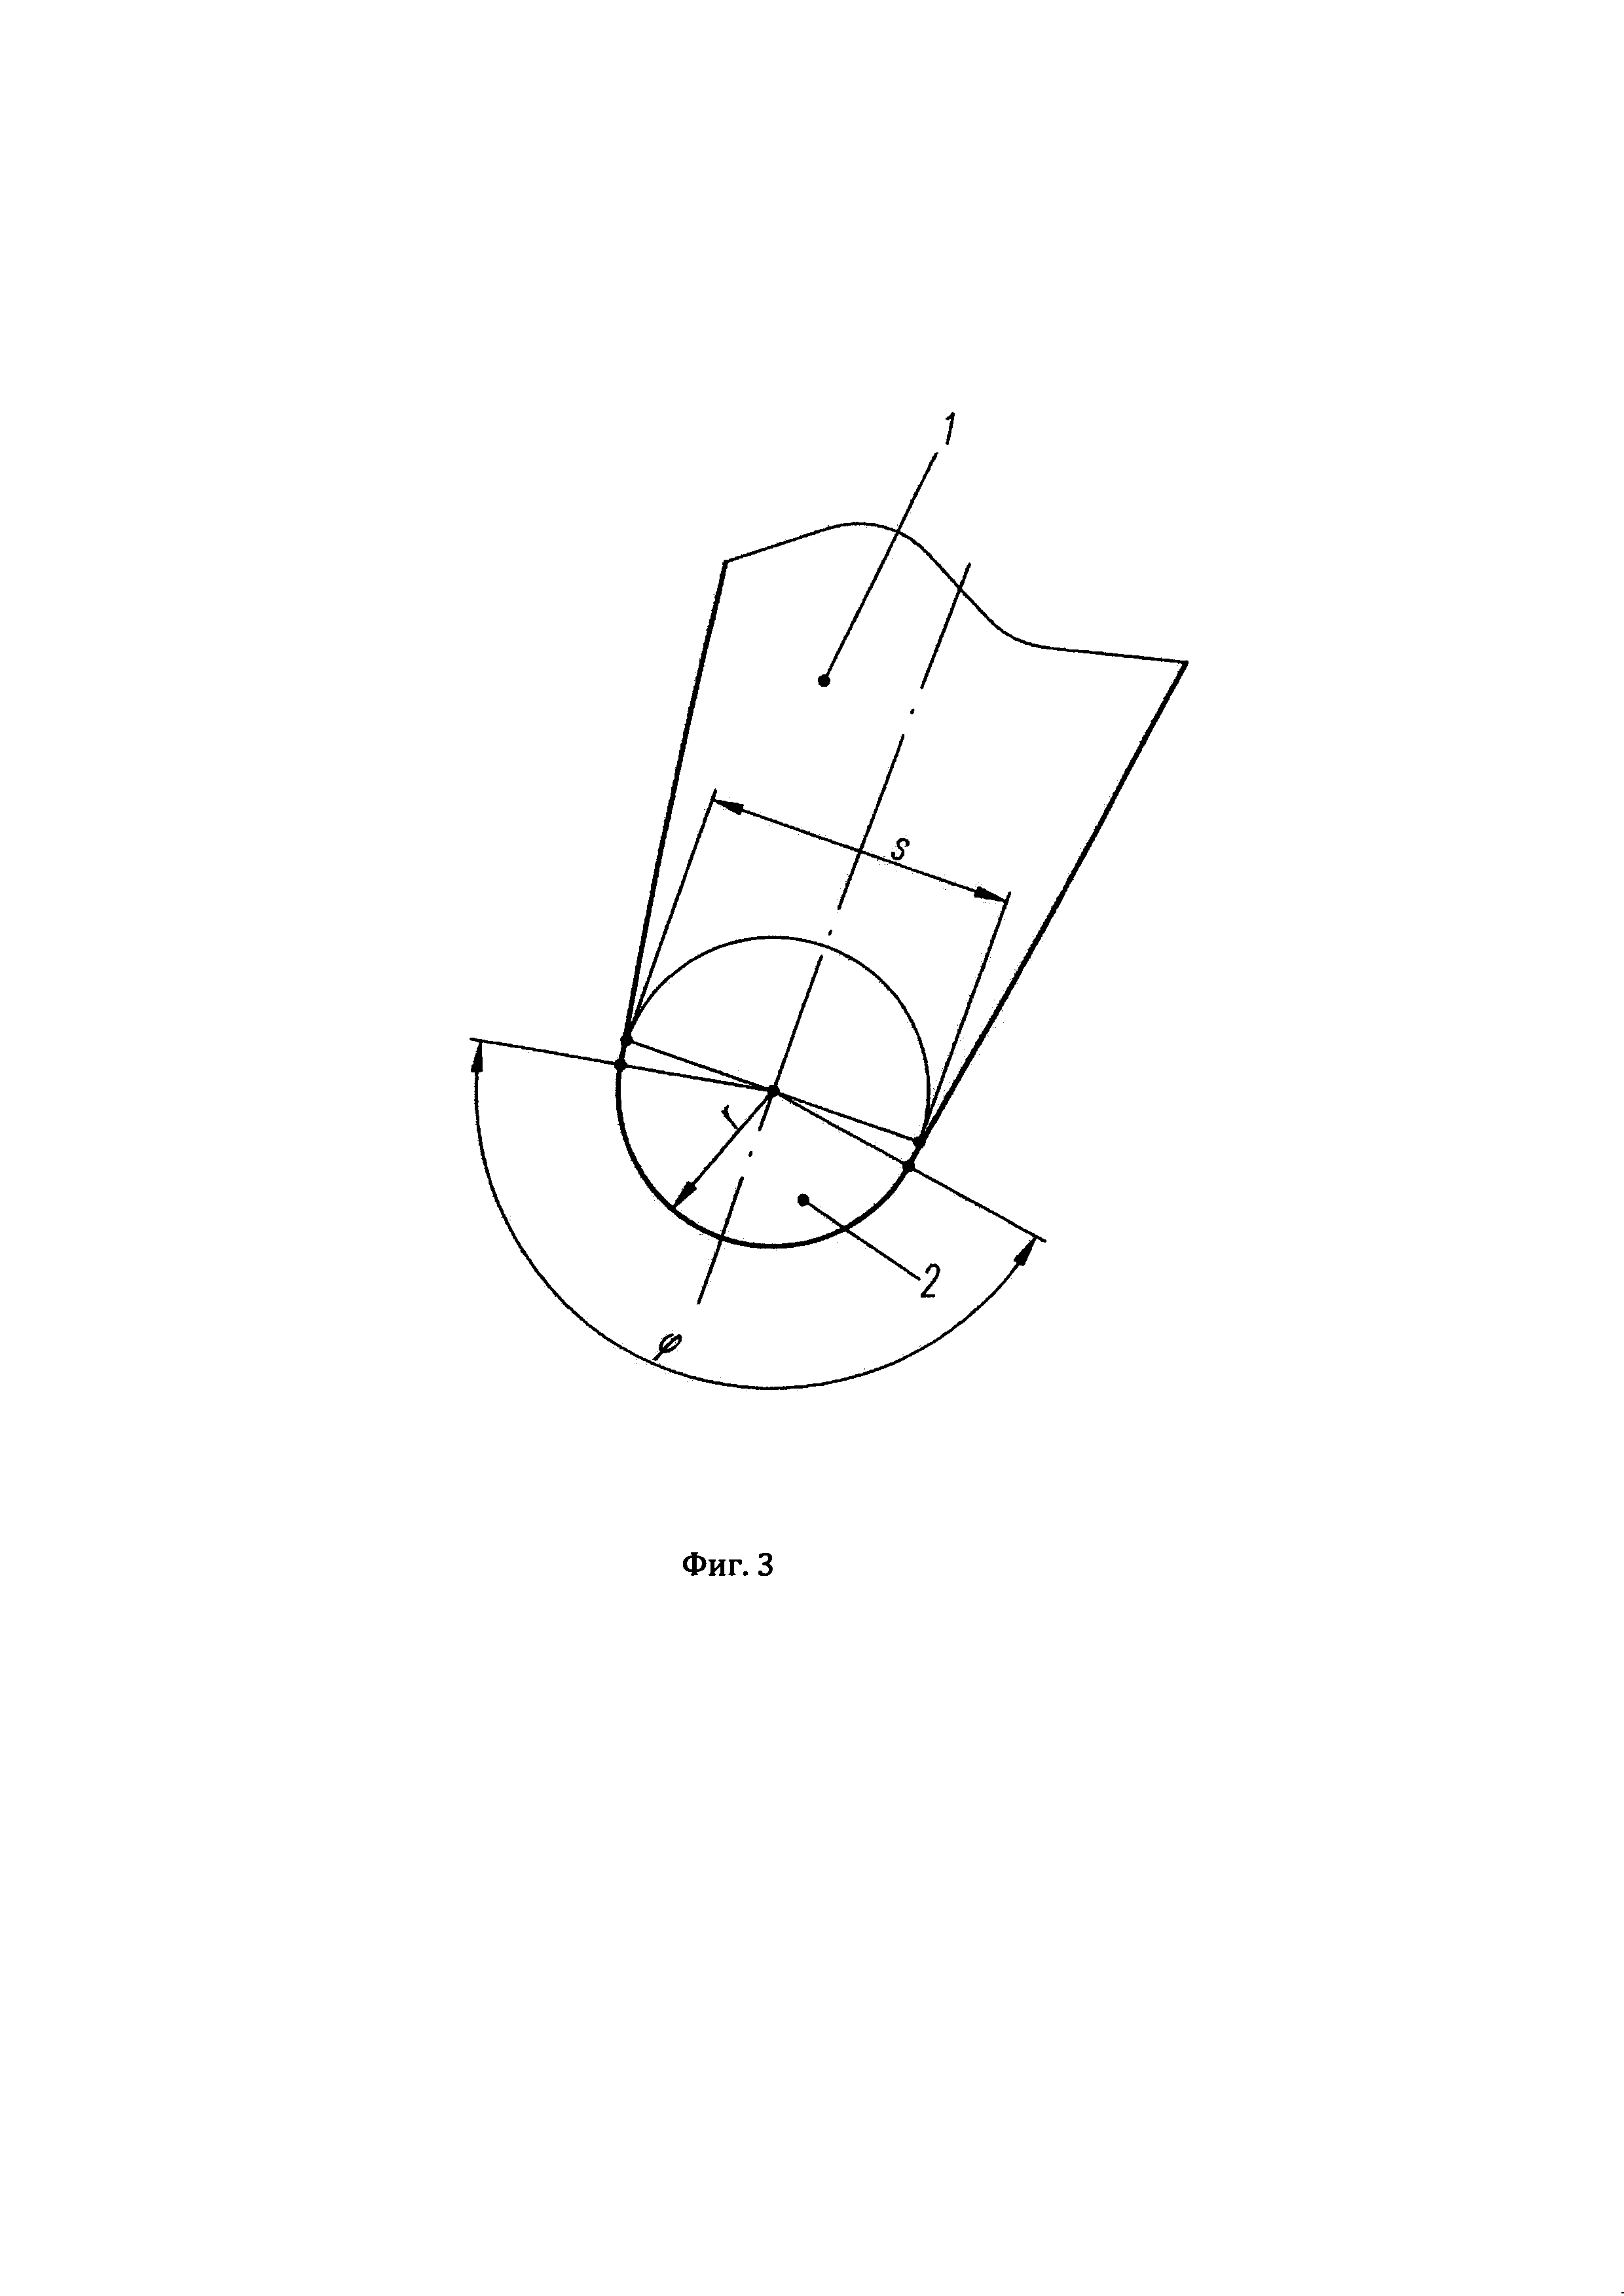 Лопаточная решётка центробежной турбомашины